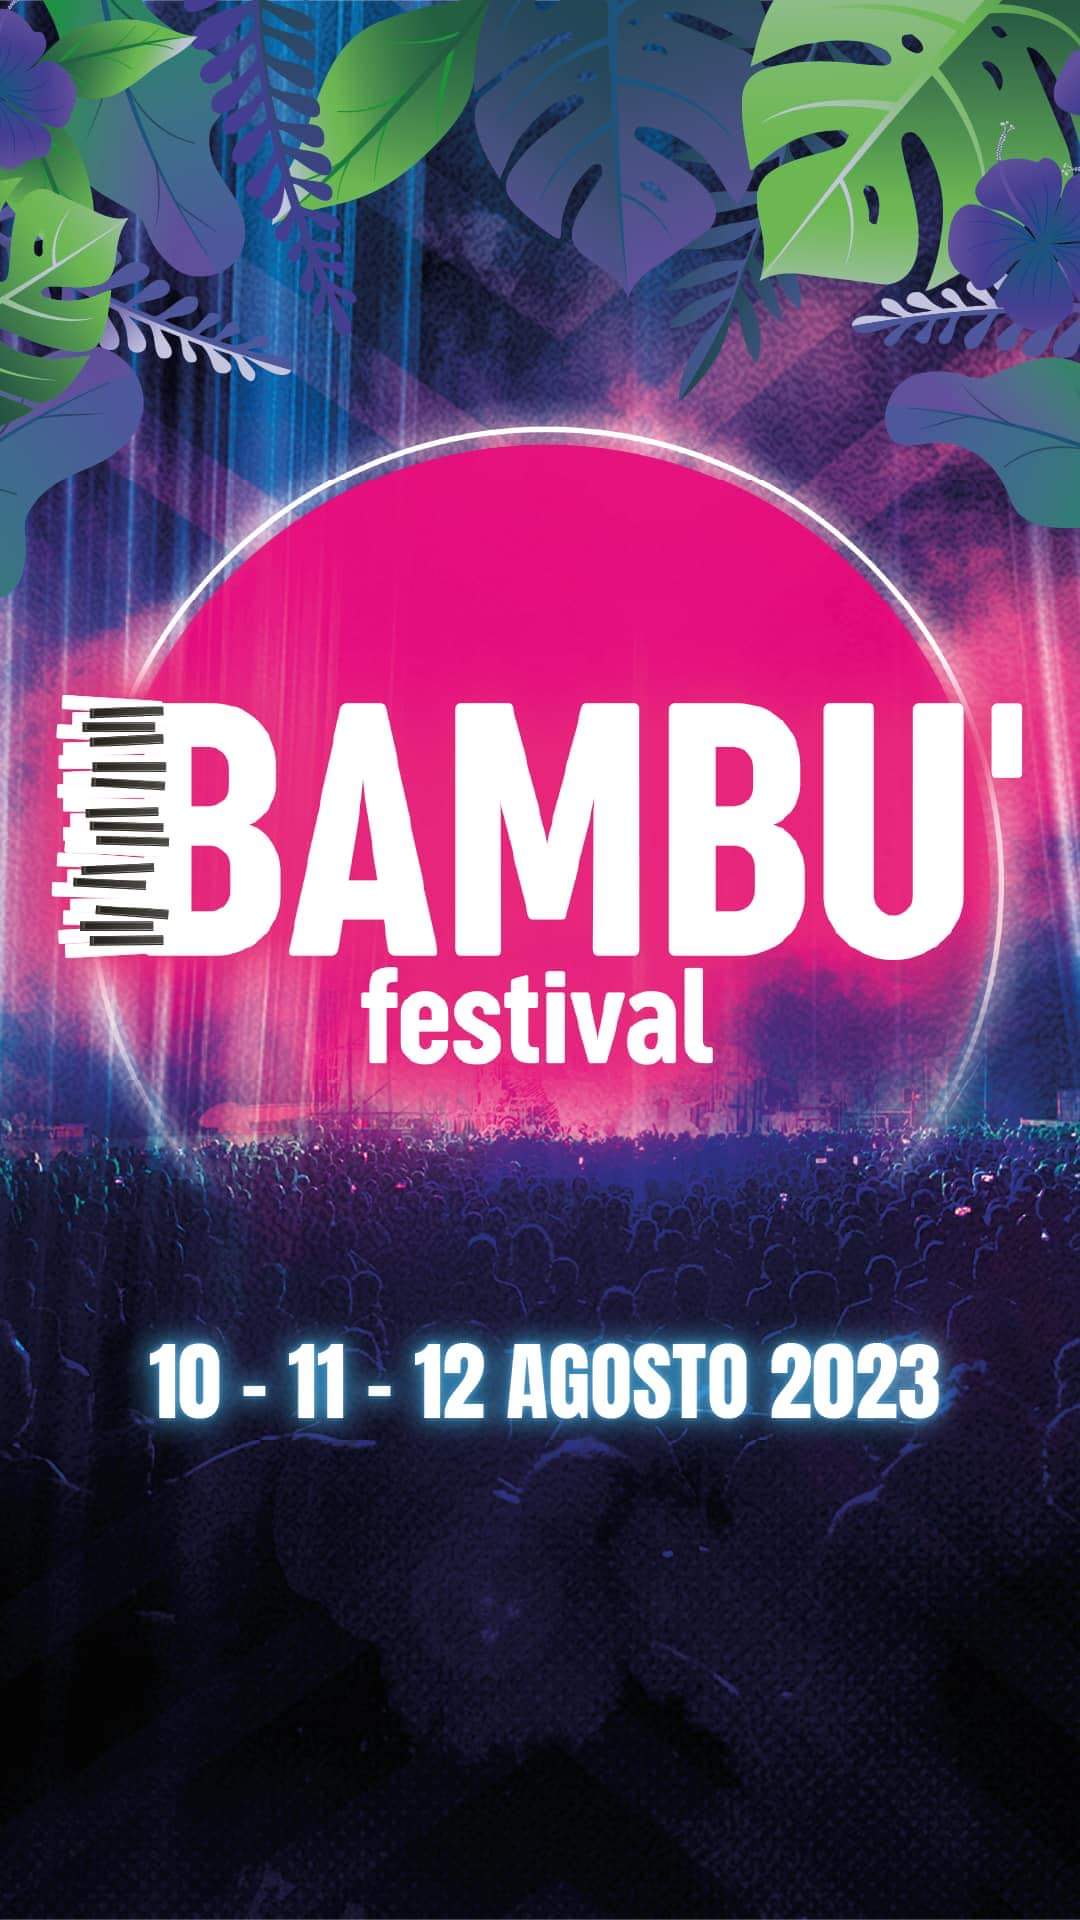 Bambù Festival, inizia il conto alla rovescia per l’evento musicale con Carl Brave, Officina della Camomilla, Colla Zio, Sethu, Stratovarius, e molti altri